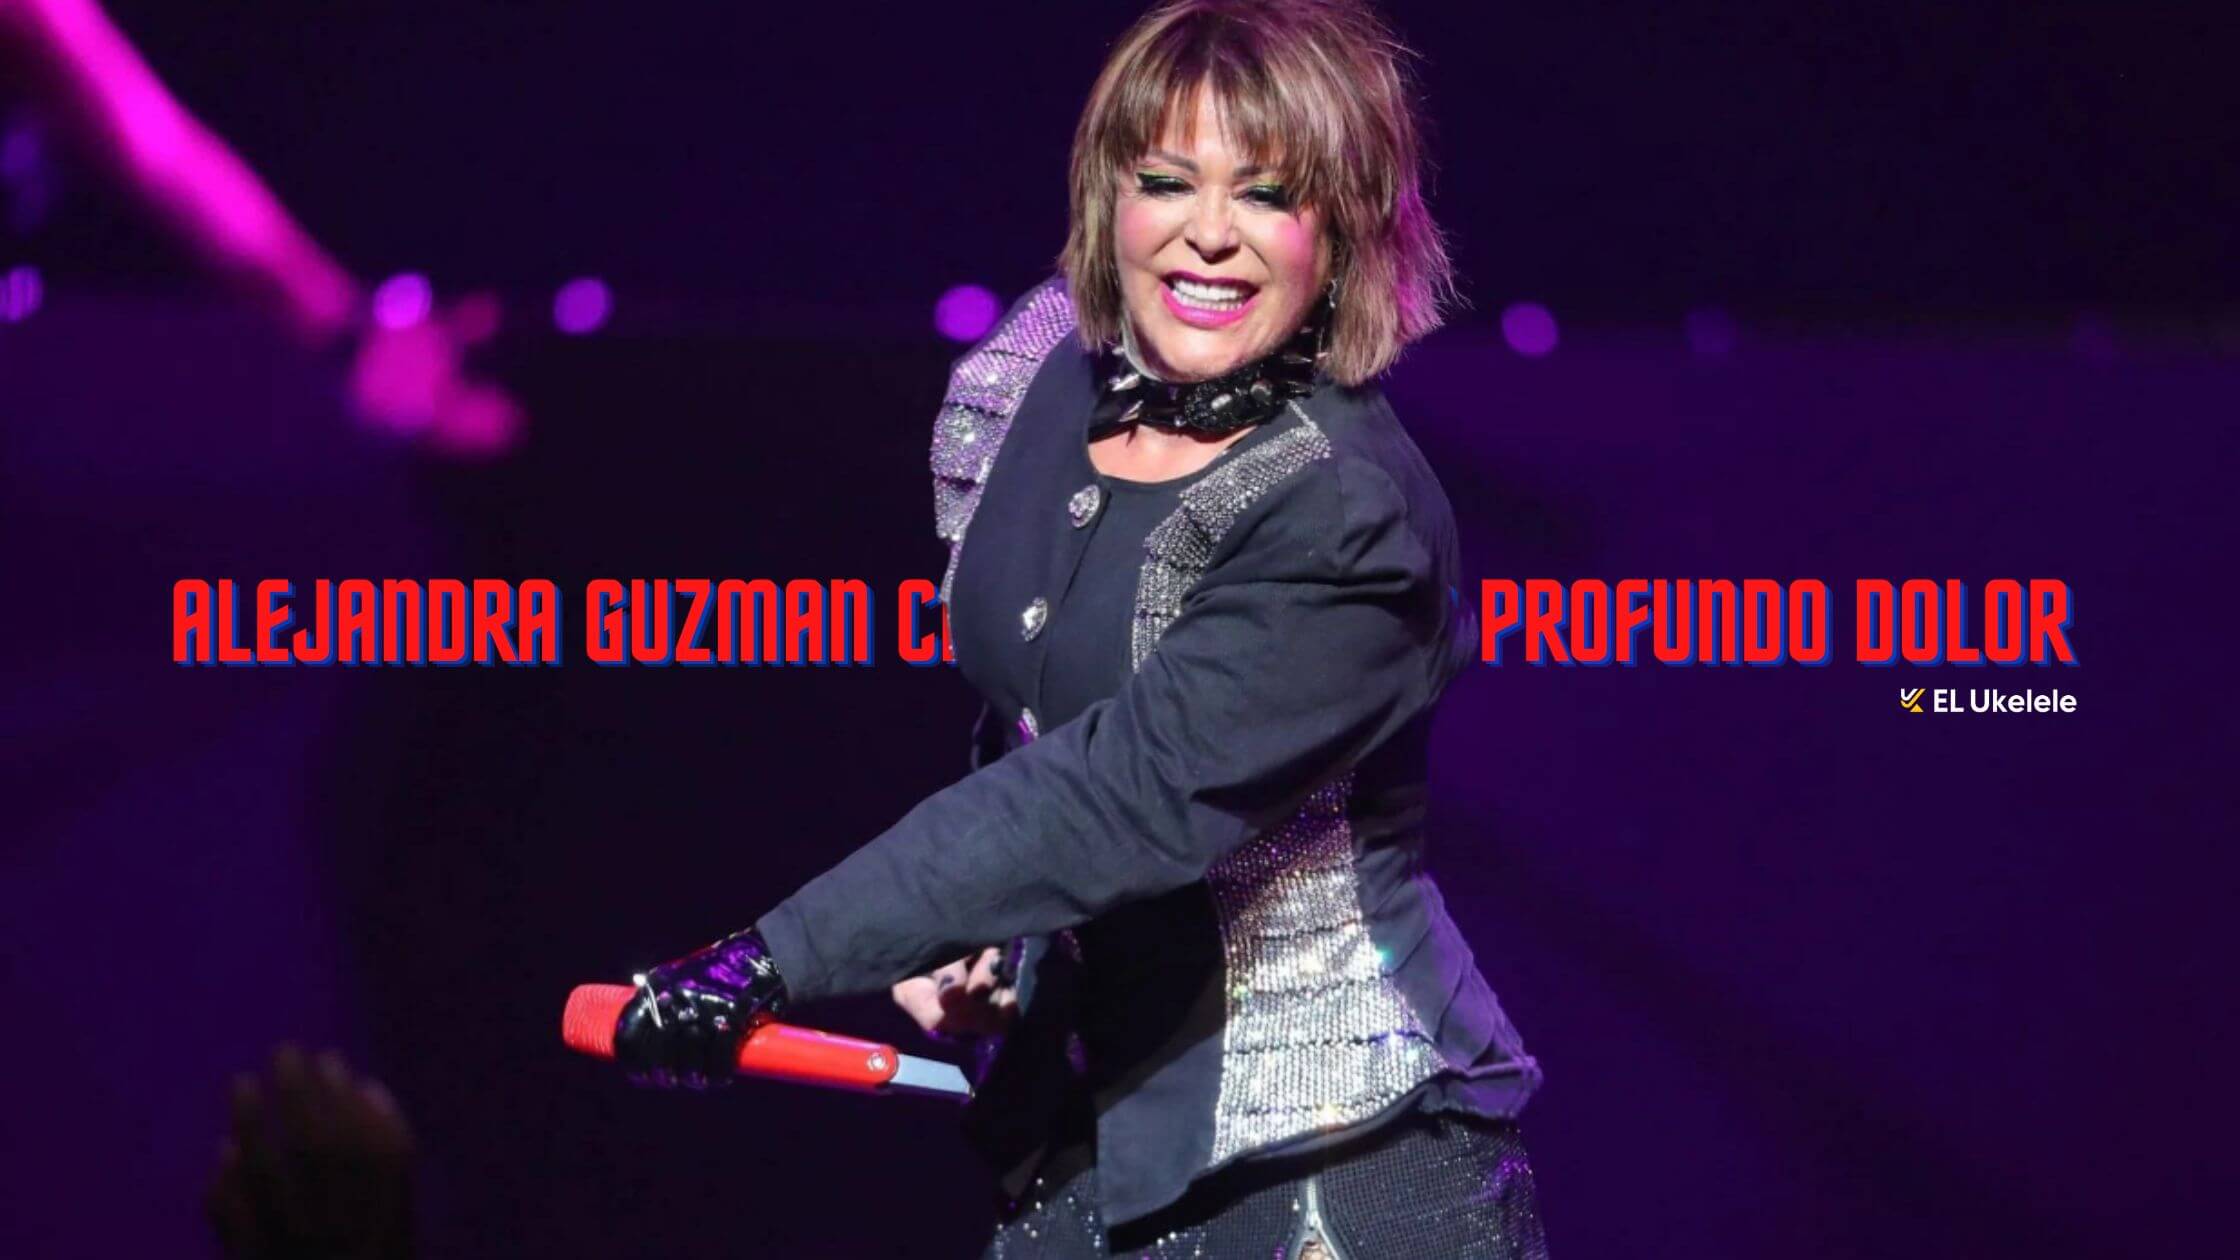 Alejandra Guzman caida causo un profundo dolor Durante un concierto 2